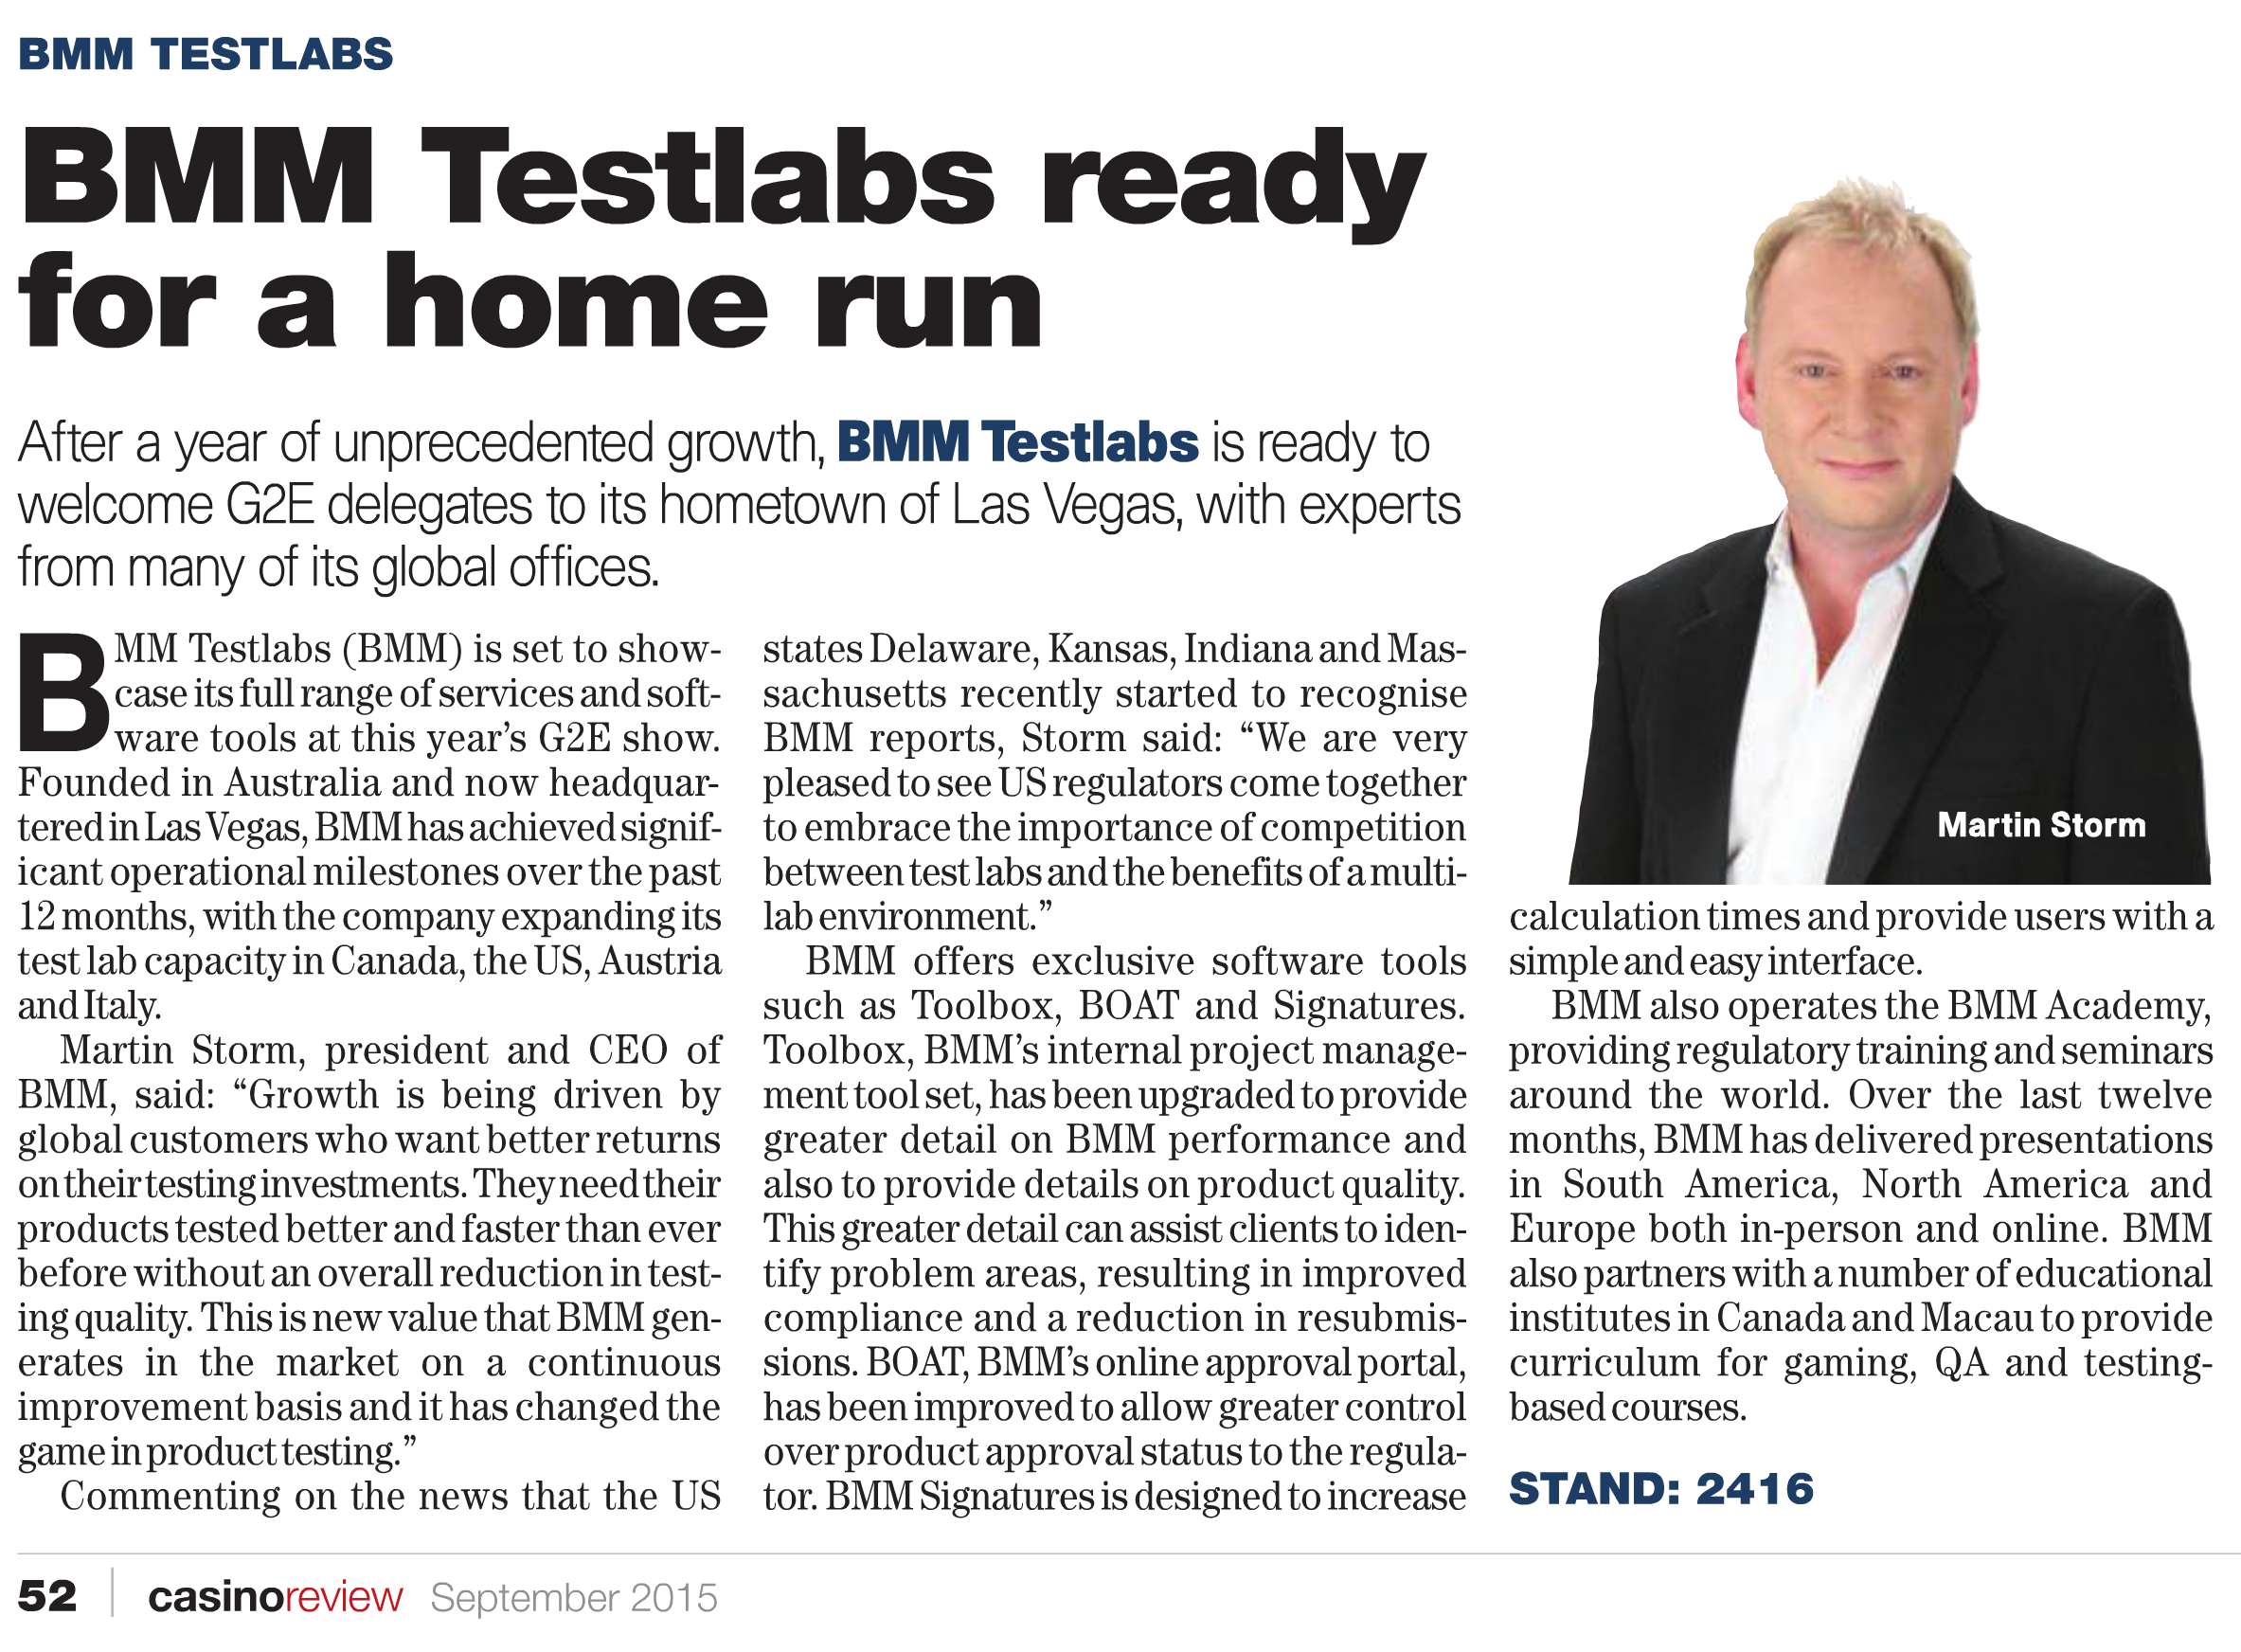 BMM Testlabs Ready for a Home Run